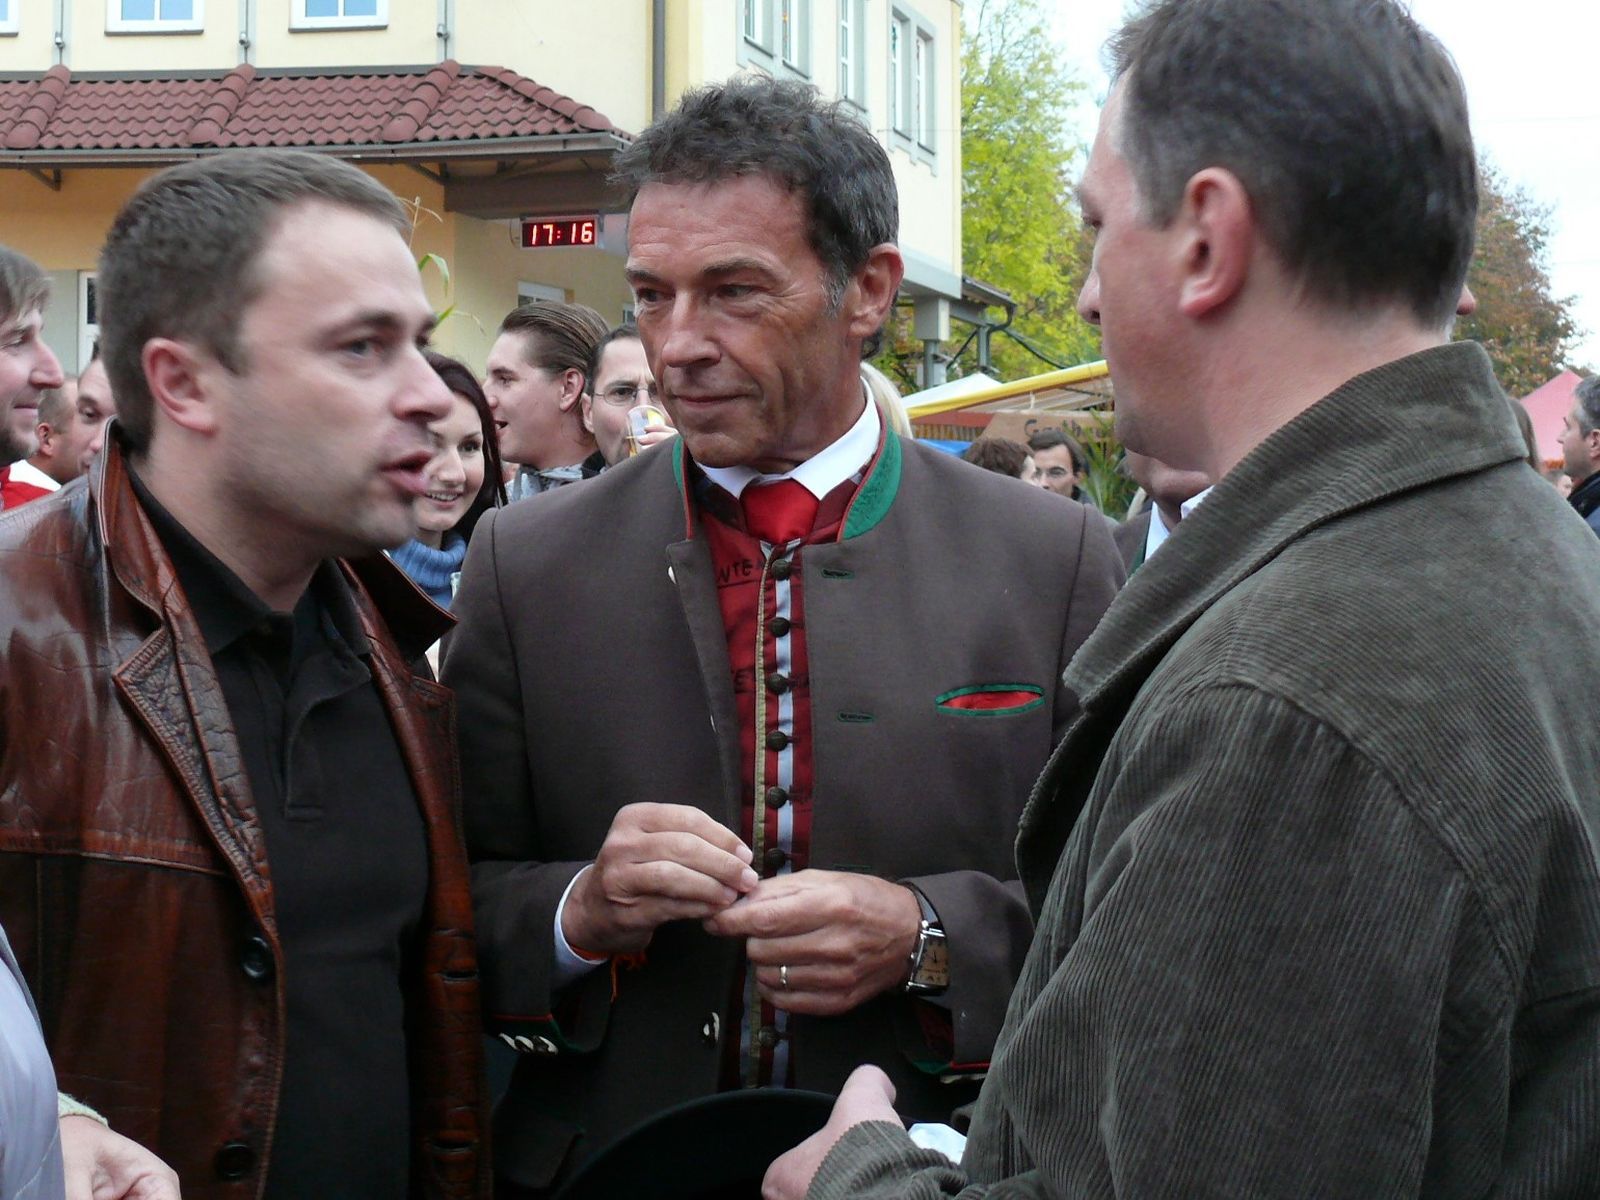 Beim Treffen polnischer Bergbauern mit dem Kärntner Landeshauptmann J. Haider